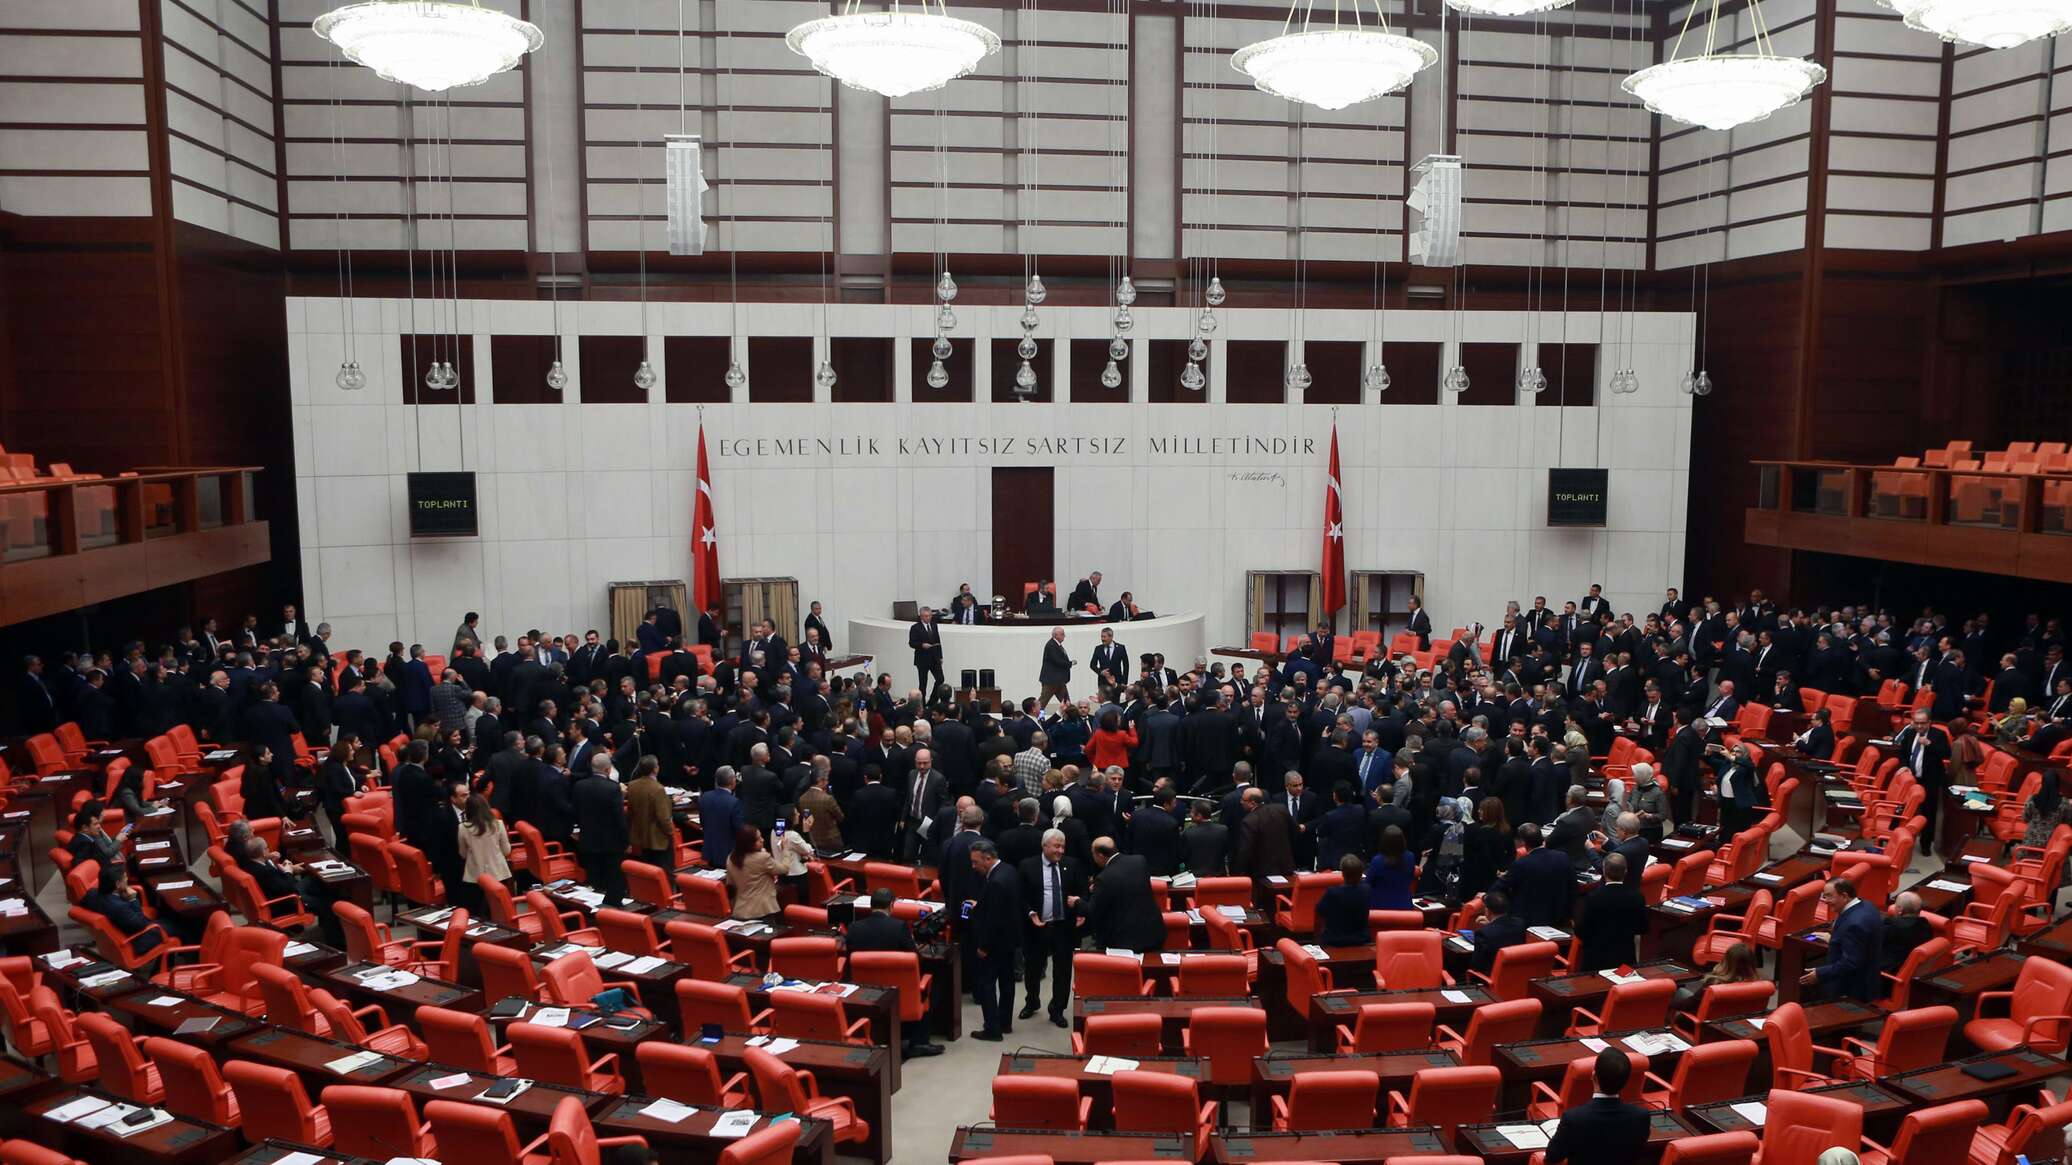 دعوات في البرلمان التركي للانسحاب من "الناتو"